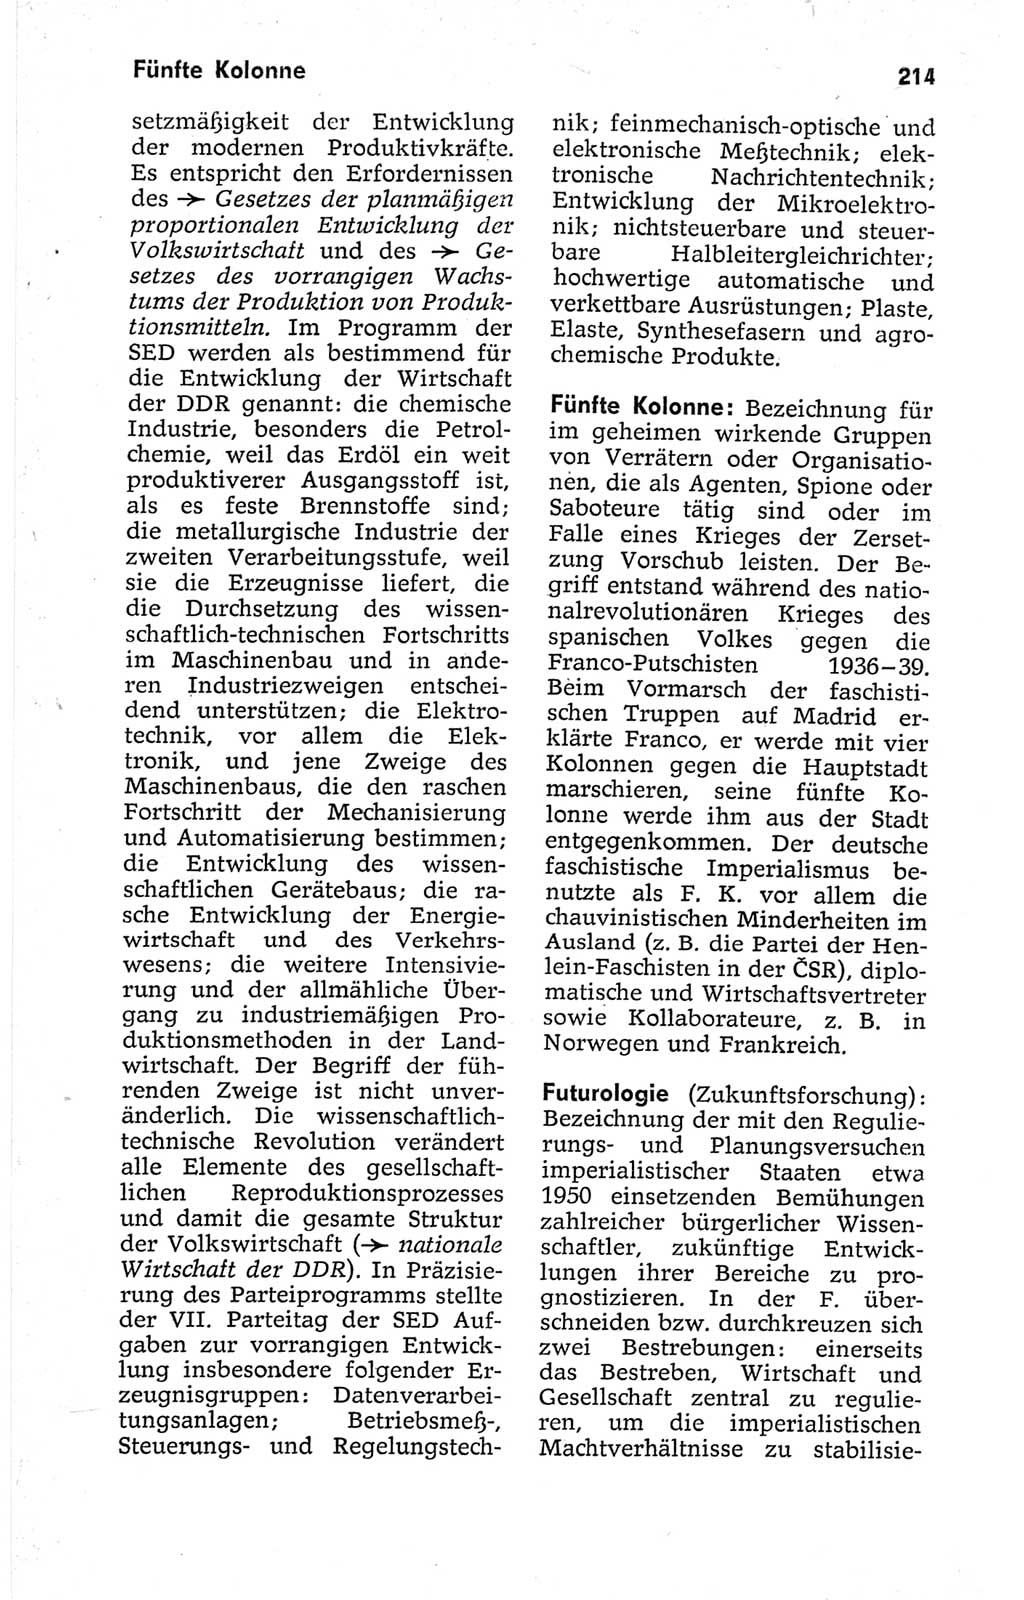 Kleines politisches Wörterbuch [Deutsche Demokratische Republik (DDR)] 1967, Seite 214 (Kl. pol. Wb. DDR 1967, S. 214)